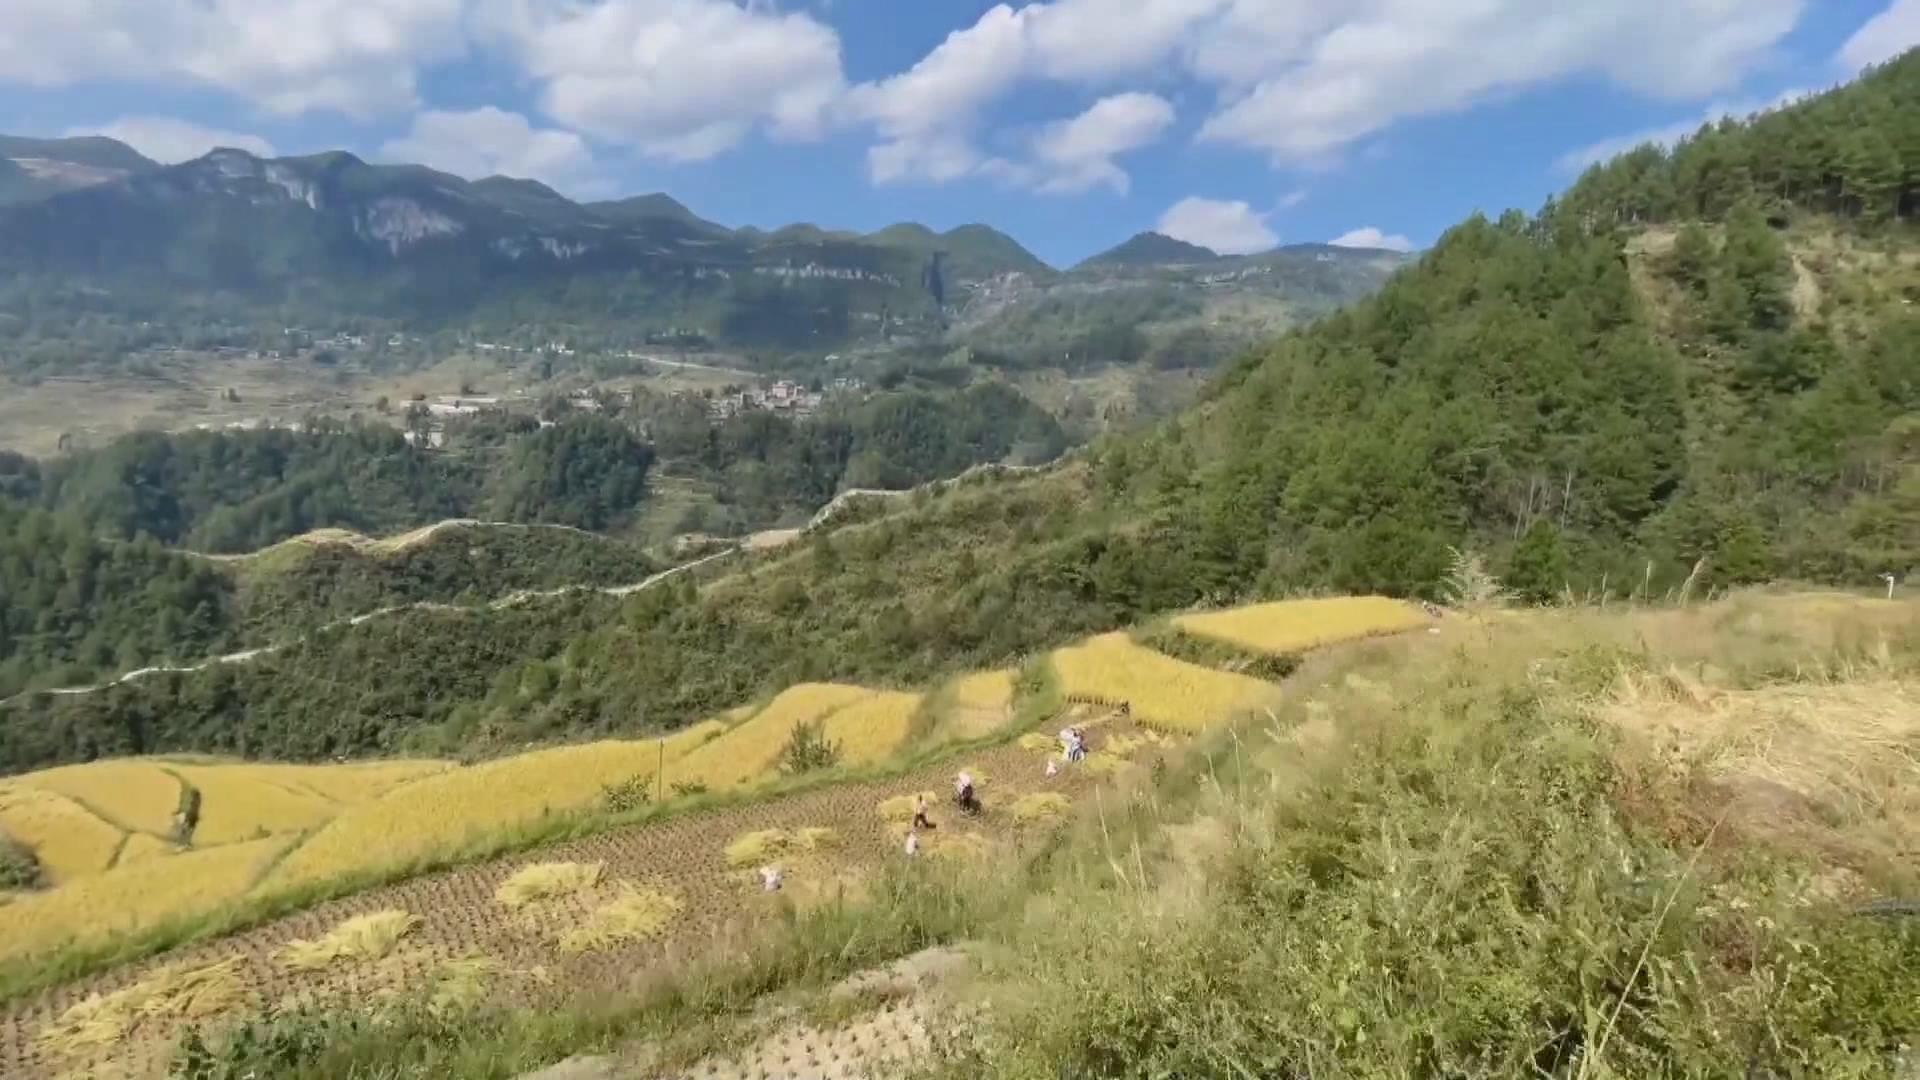 Comienza cosecha de pintorescos arrozales en terrazas de 400 años de antigüedad en China